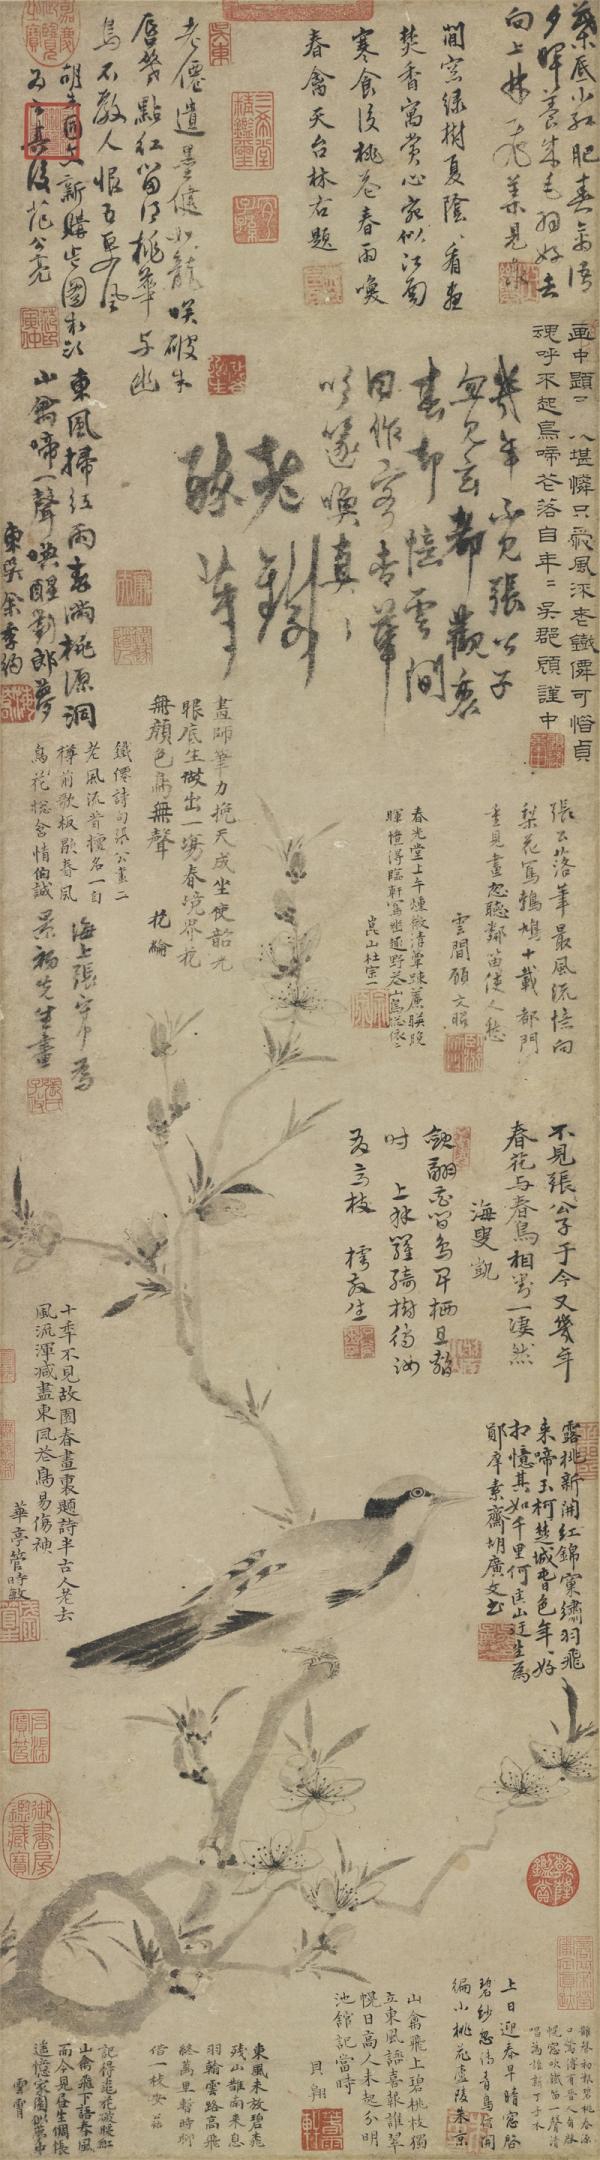 《桃花幽鸟图》轴，元，张中绘，纸本墨画，112.2 x 31.4cm，台北故宫博物院。